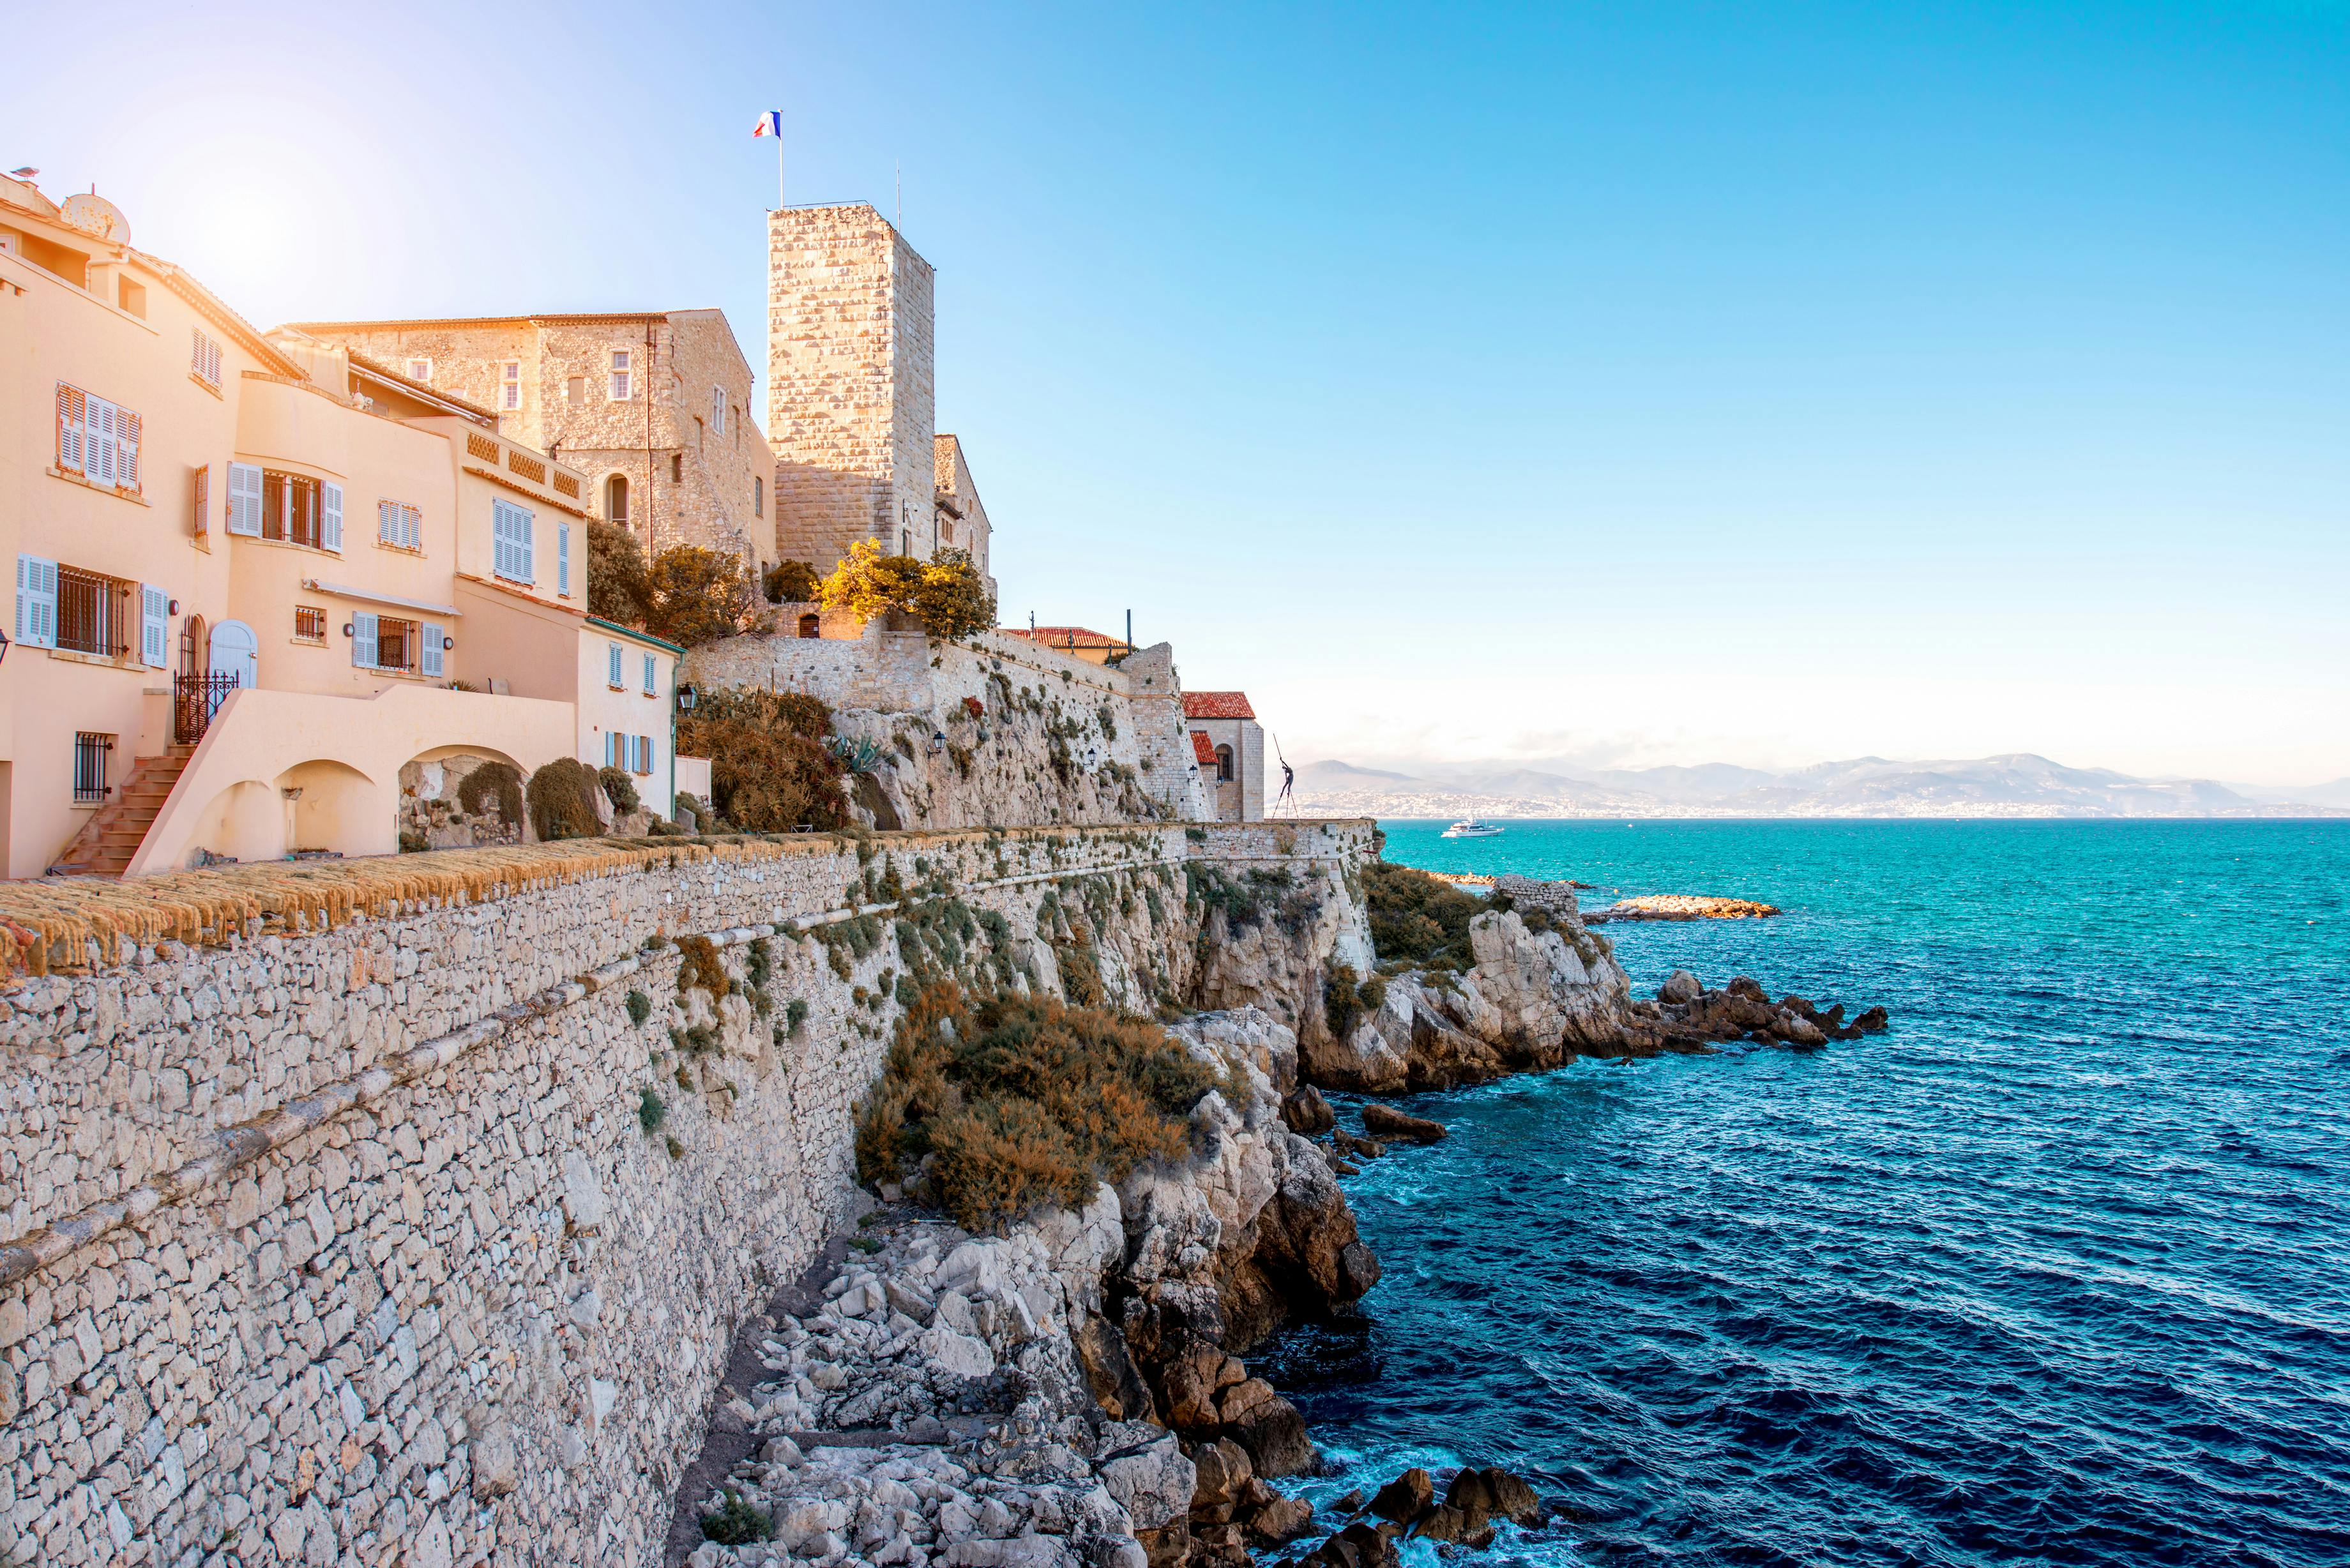 Cannes, Antibes en Saint Paul de Vence gedeelde tour vanuit Nice